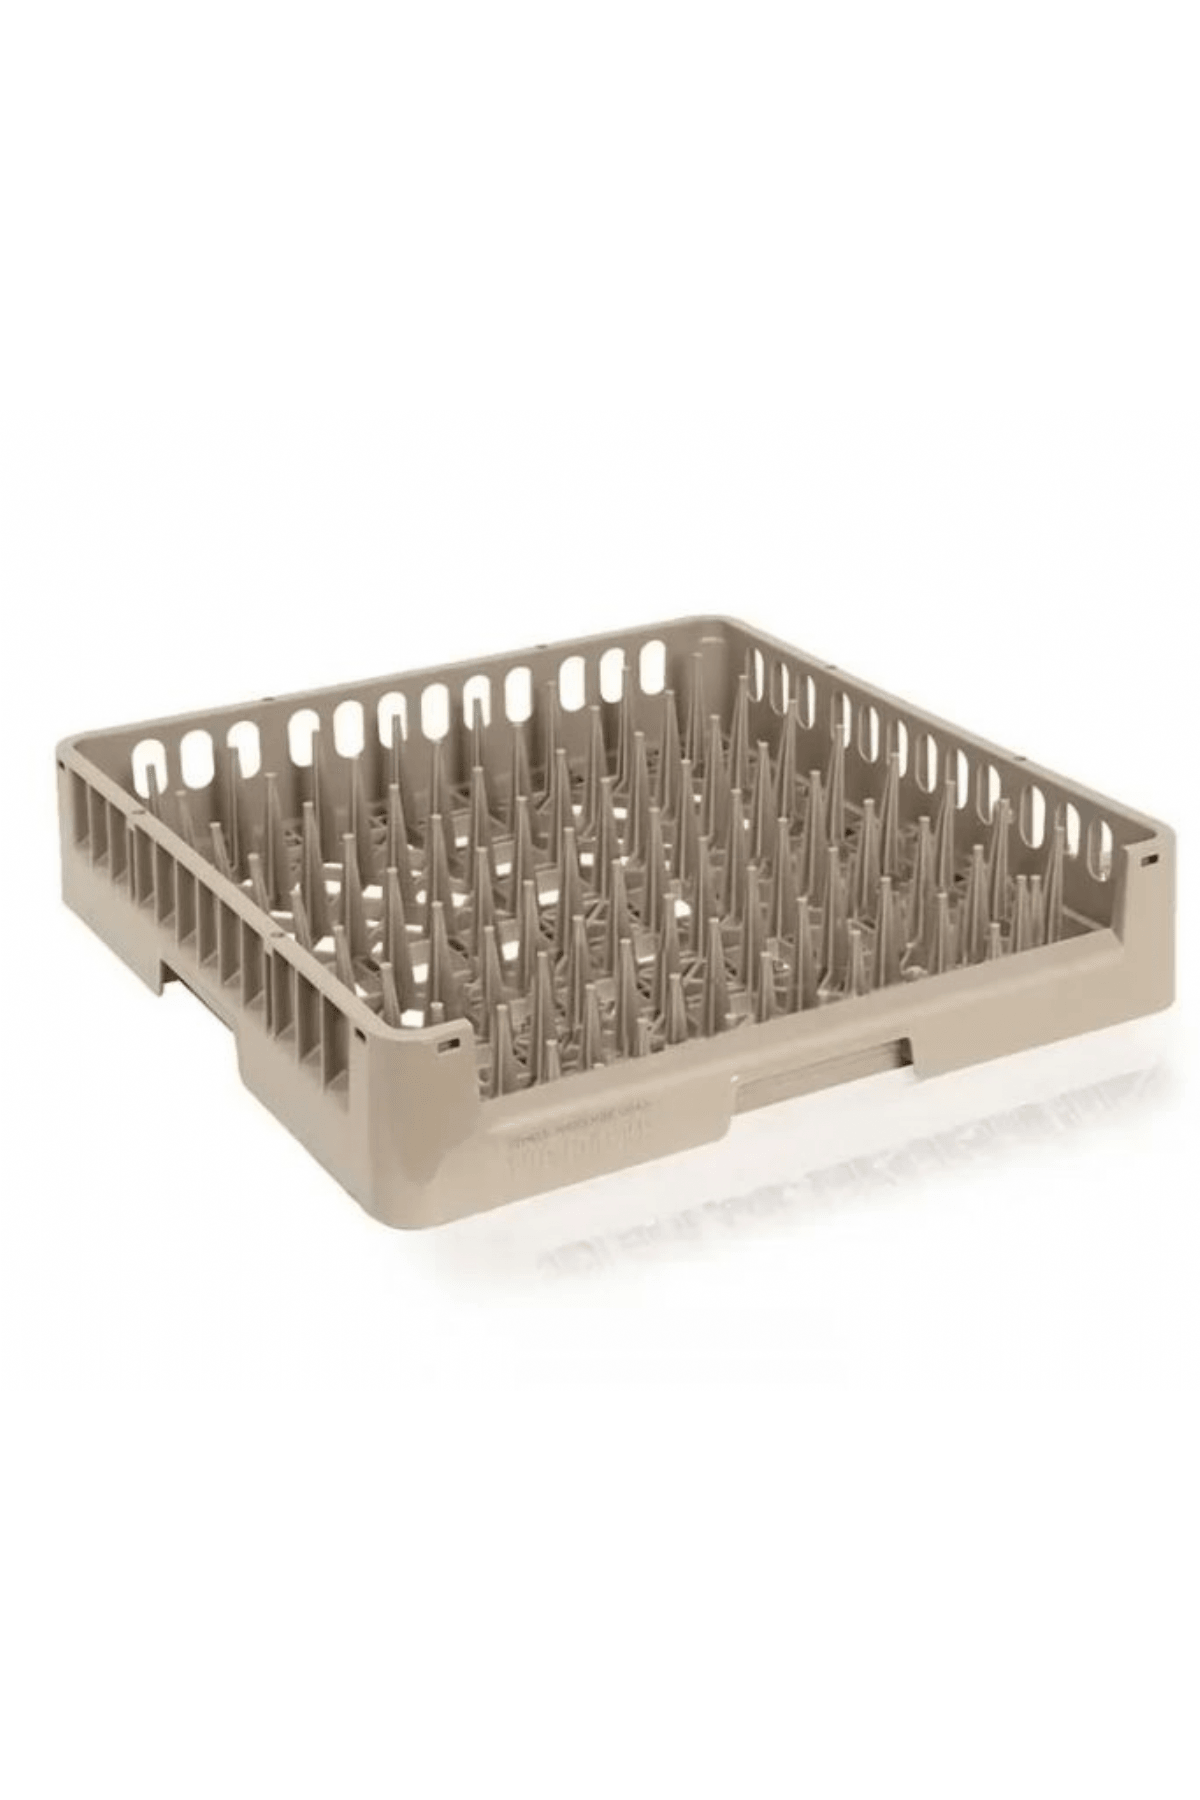 Qavun Tray Dishwasher Basket, 50x50x10 cm for HORECA - Qavunco